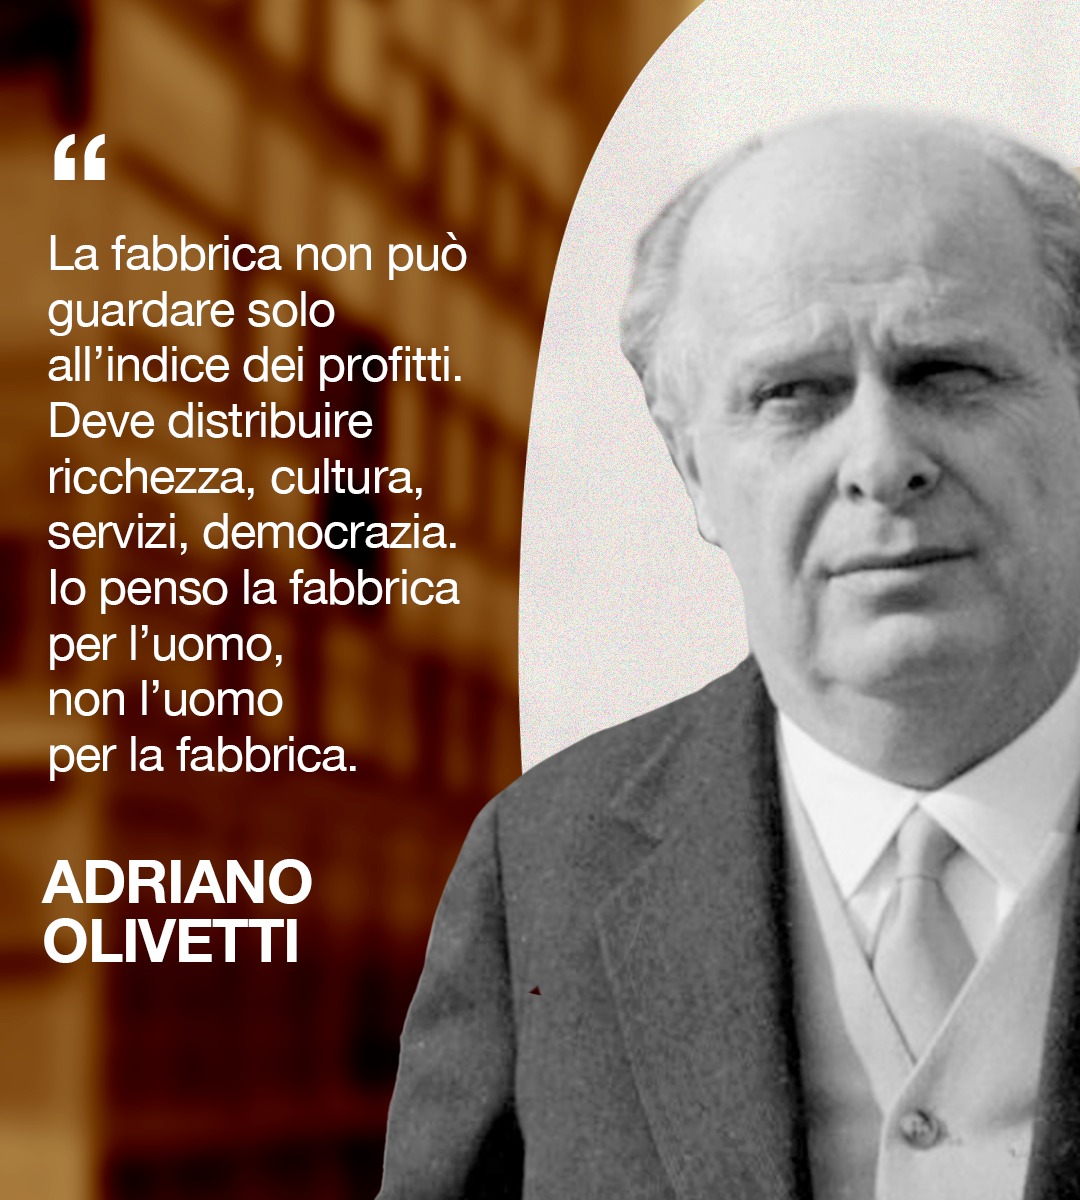 Nel giorno della sua nascita celebriamo Adriano Olivetti, imprenditore visionario che ha lasciato un'impronta indelebile nel mondo dell'industria italiana. Il suo approccio ha rivoluzionato il concetto di lavoro e di produzione, mettendo al centro il benessere dei lavoratori e…